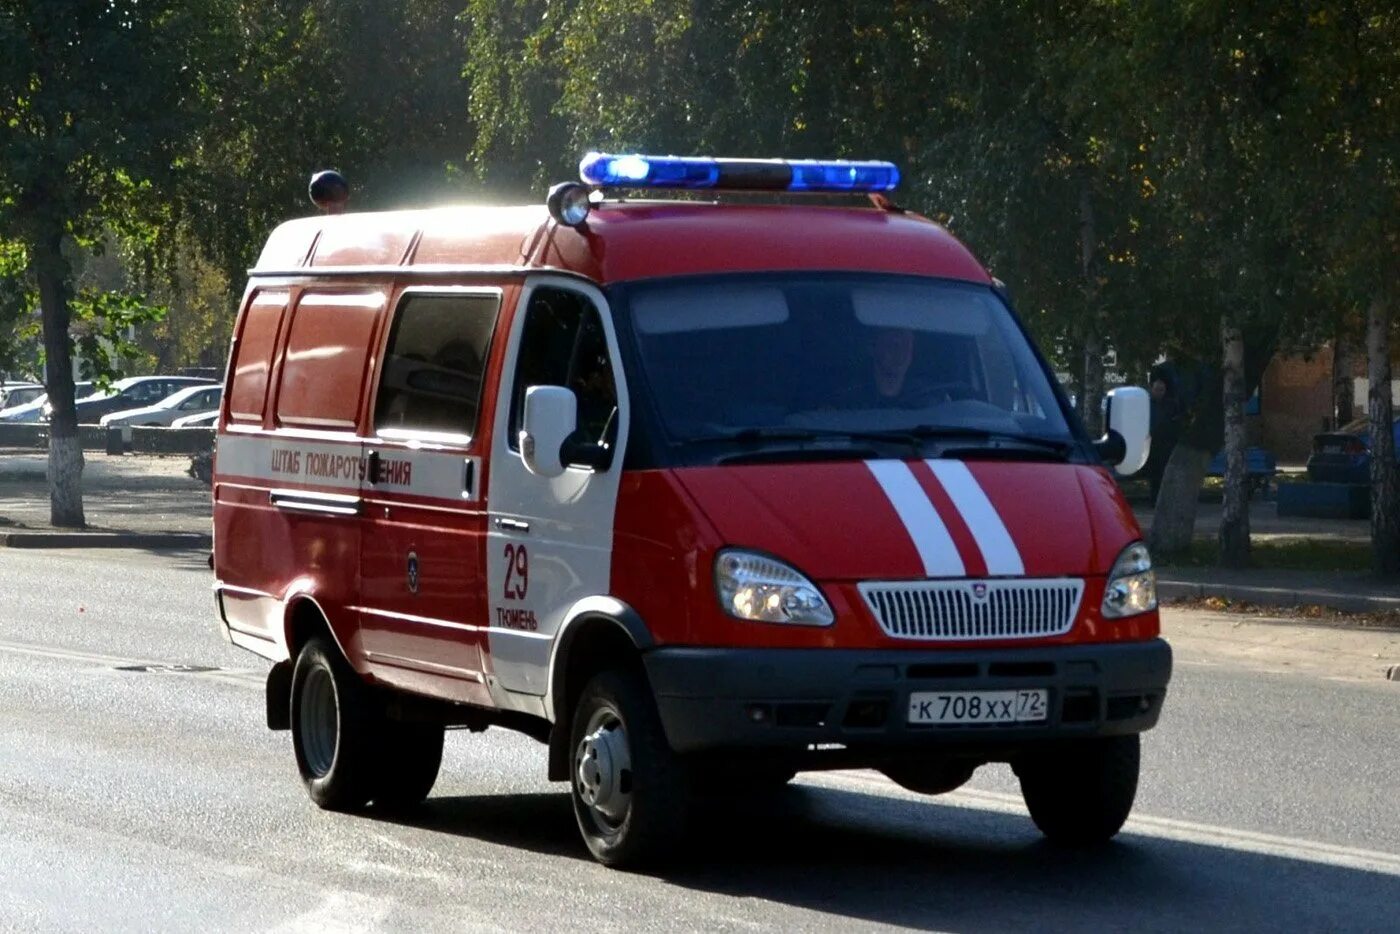 Аш-7 27057. ГАЗ 2705 пожарная. Аш-7 ГАЗ 2705. Пожарные штабные автомобили ГАЗ 27057.